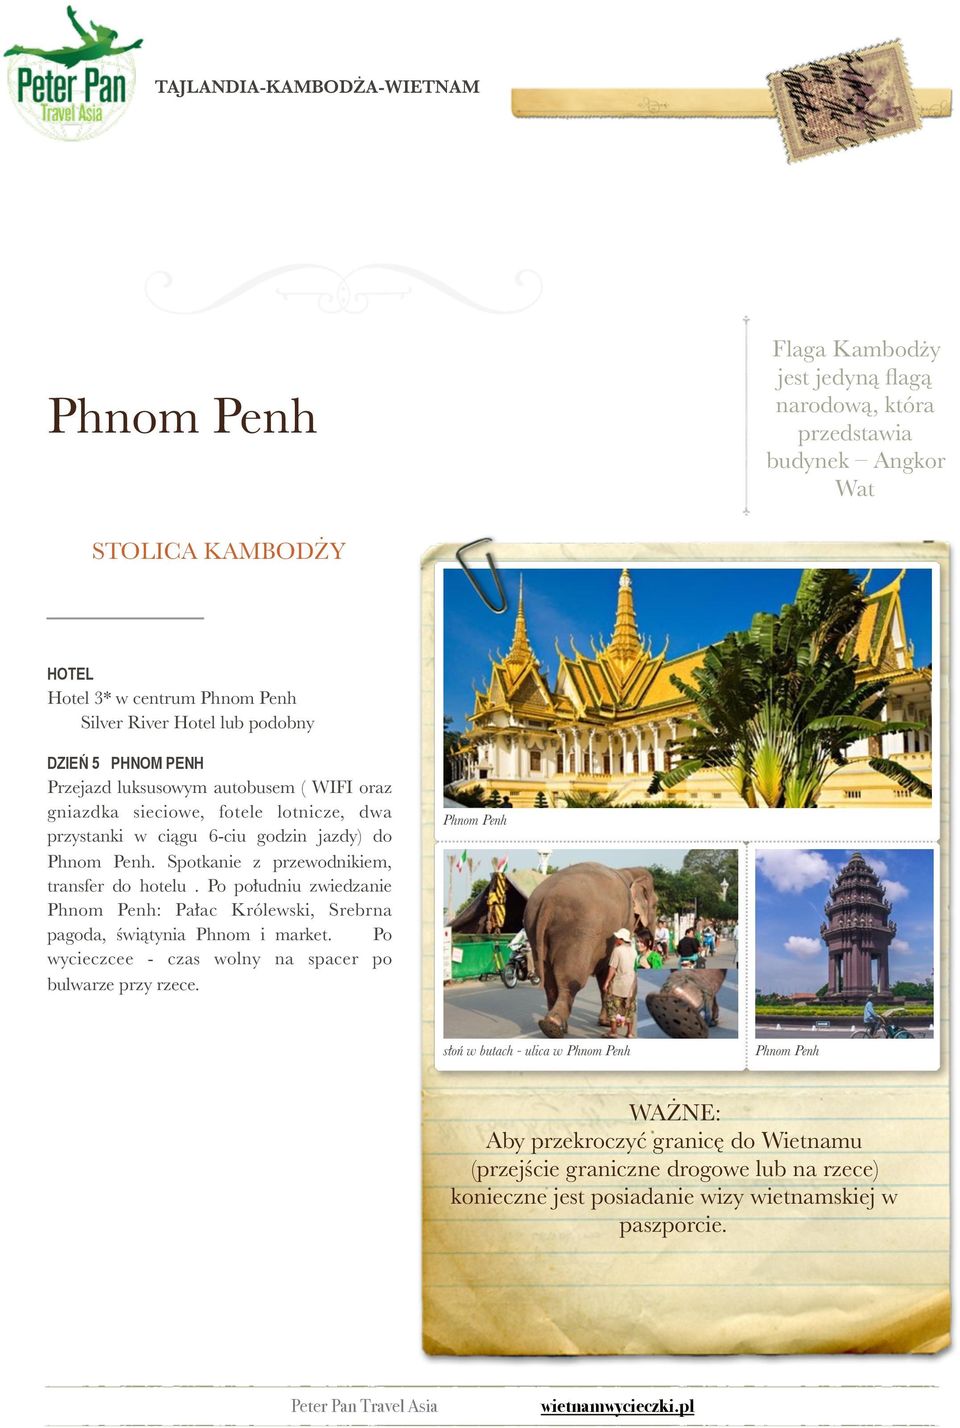 Spotkanie z przewodnikiem, transfer do hotelu. Po południu zwiedzanie Phnom Penh: Pałac Królewski, Srebrna pagoda, świątynia Phnom i market.